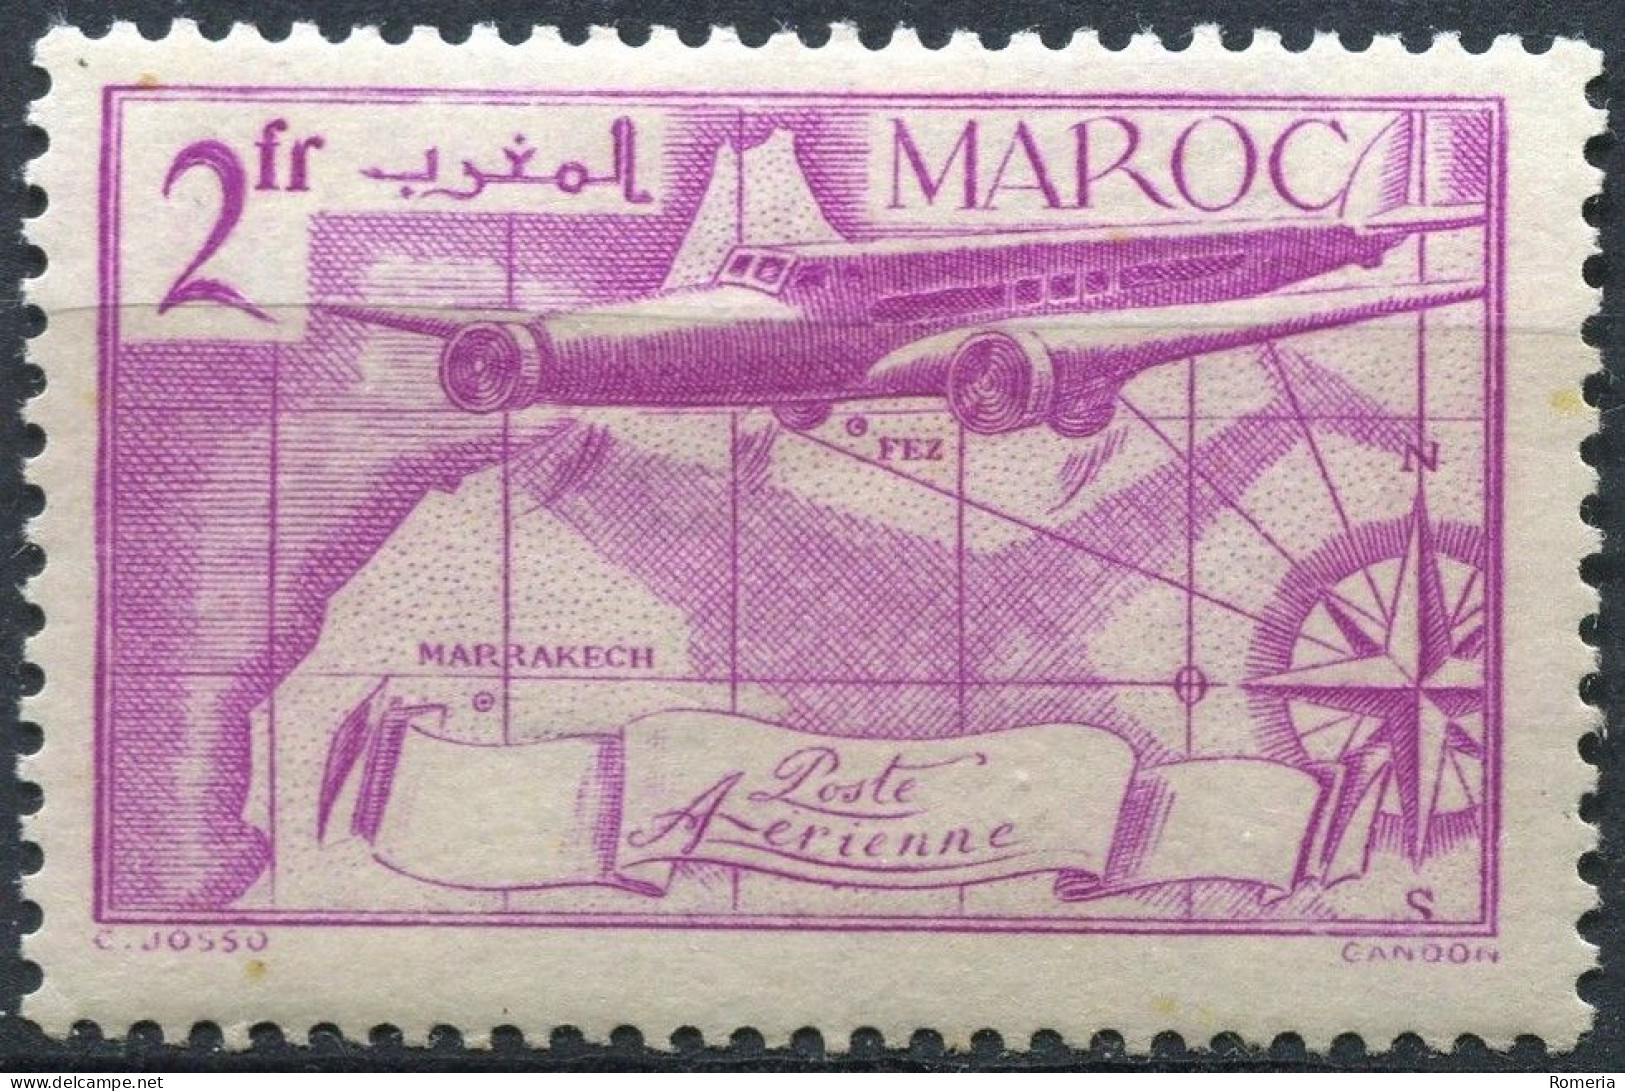 Maroc - 1922 -> 1955 - Lot Poste aérienne oblitérés - Nºs dans description